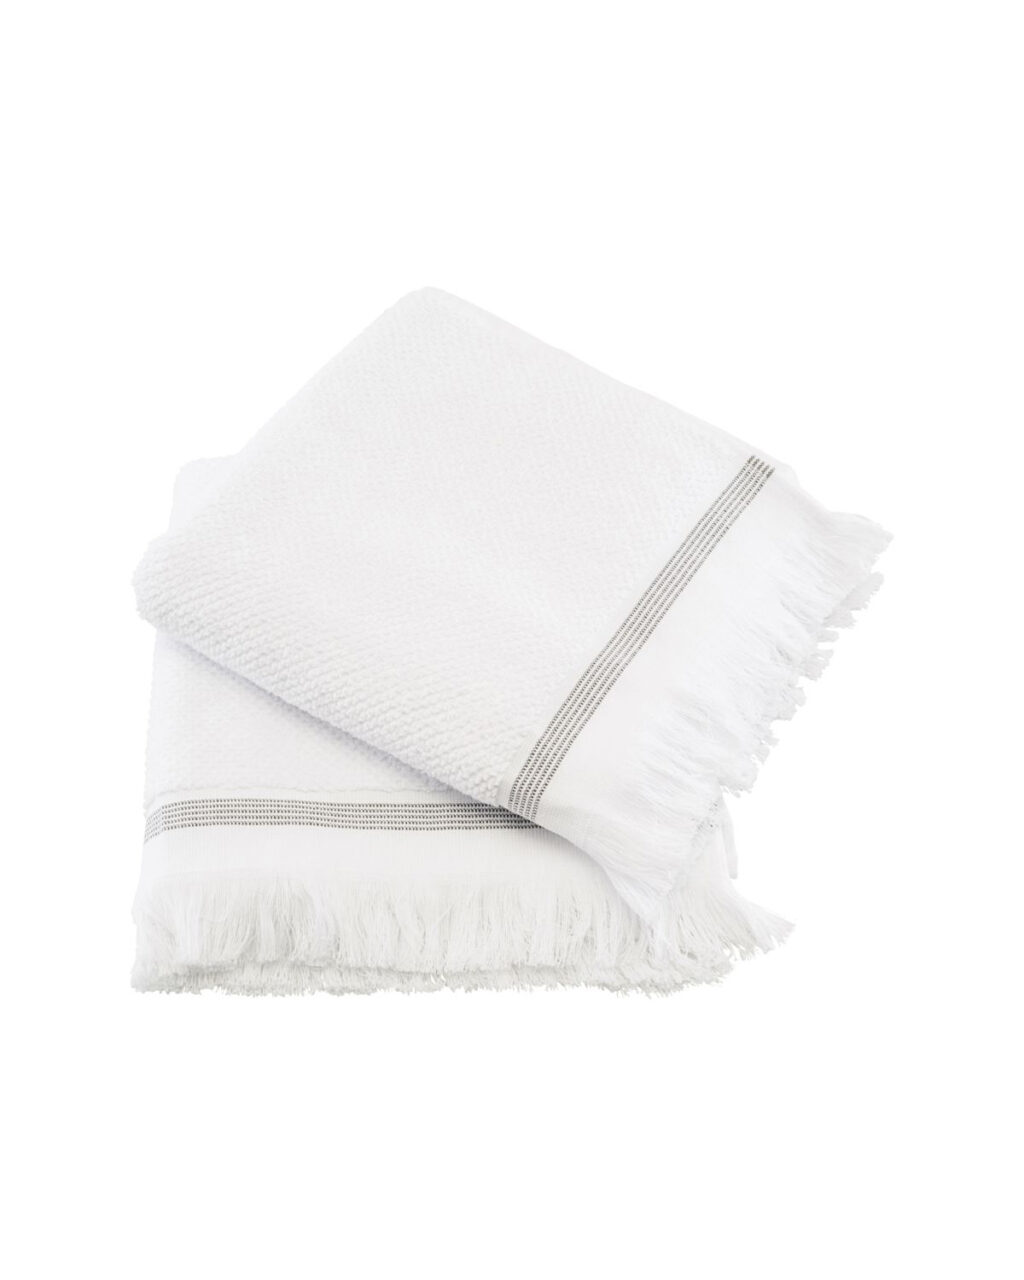 håndklæder l Hvide grå striber l 50x100 cm - udvalget her!